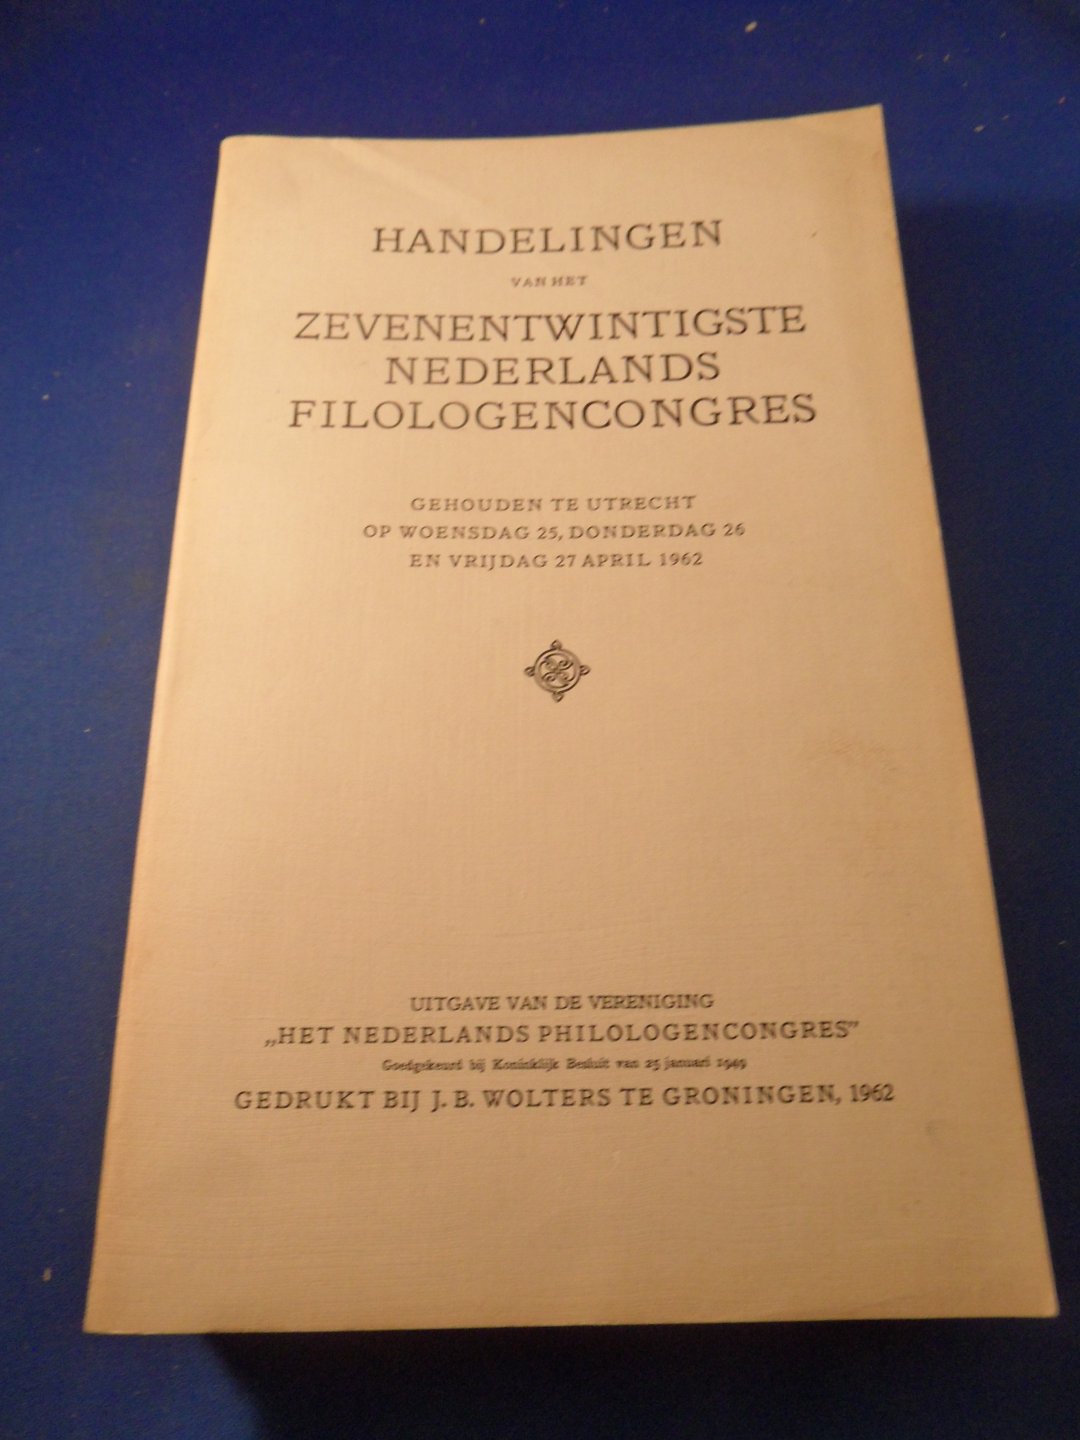  - Handelingen van het zevenentwintigste Nederlands Filologencongres. Utrecht 1962